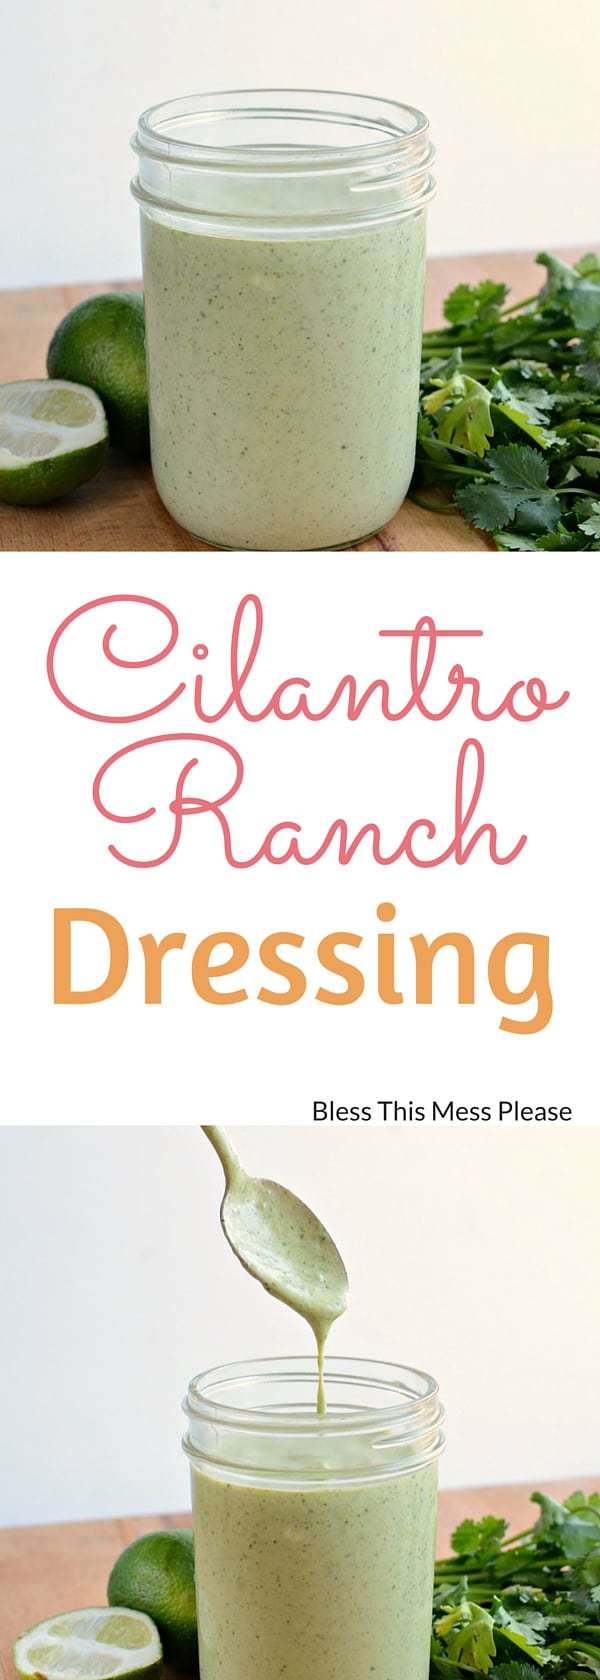 Cilantro Ranch Dressing